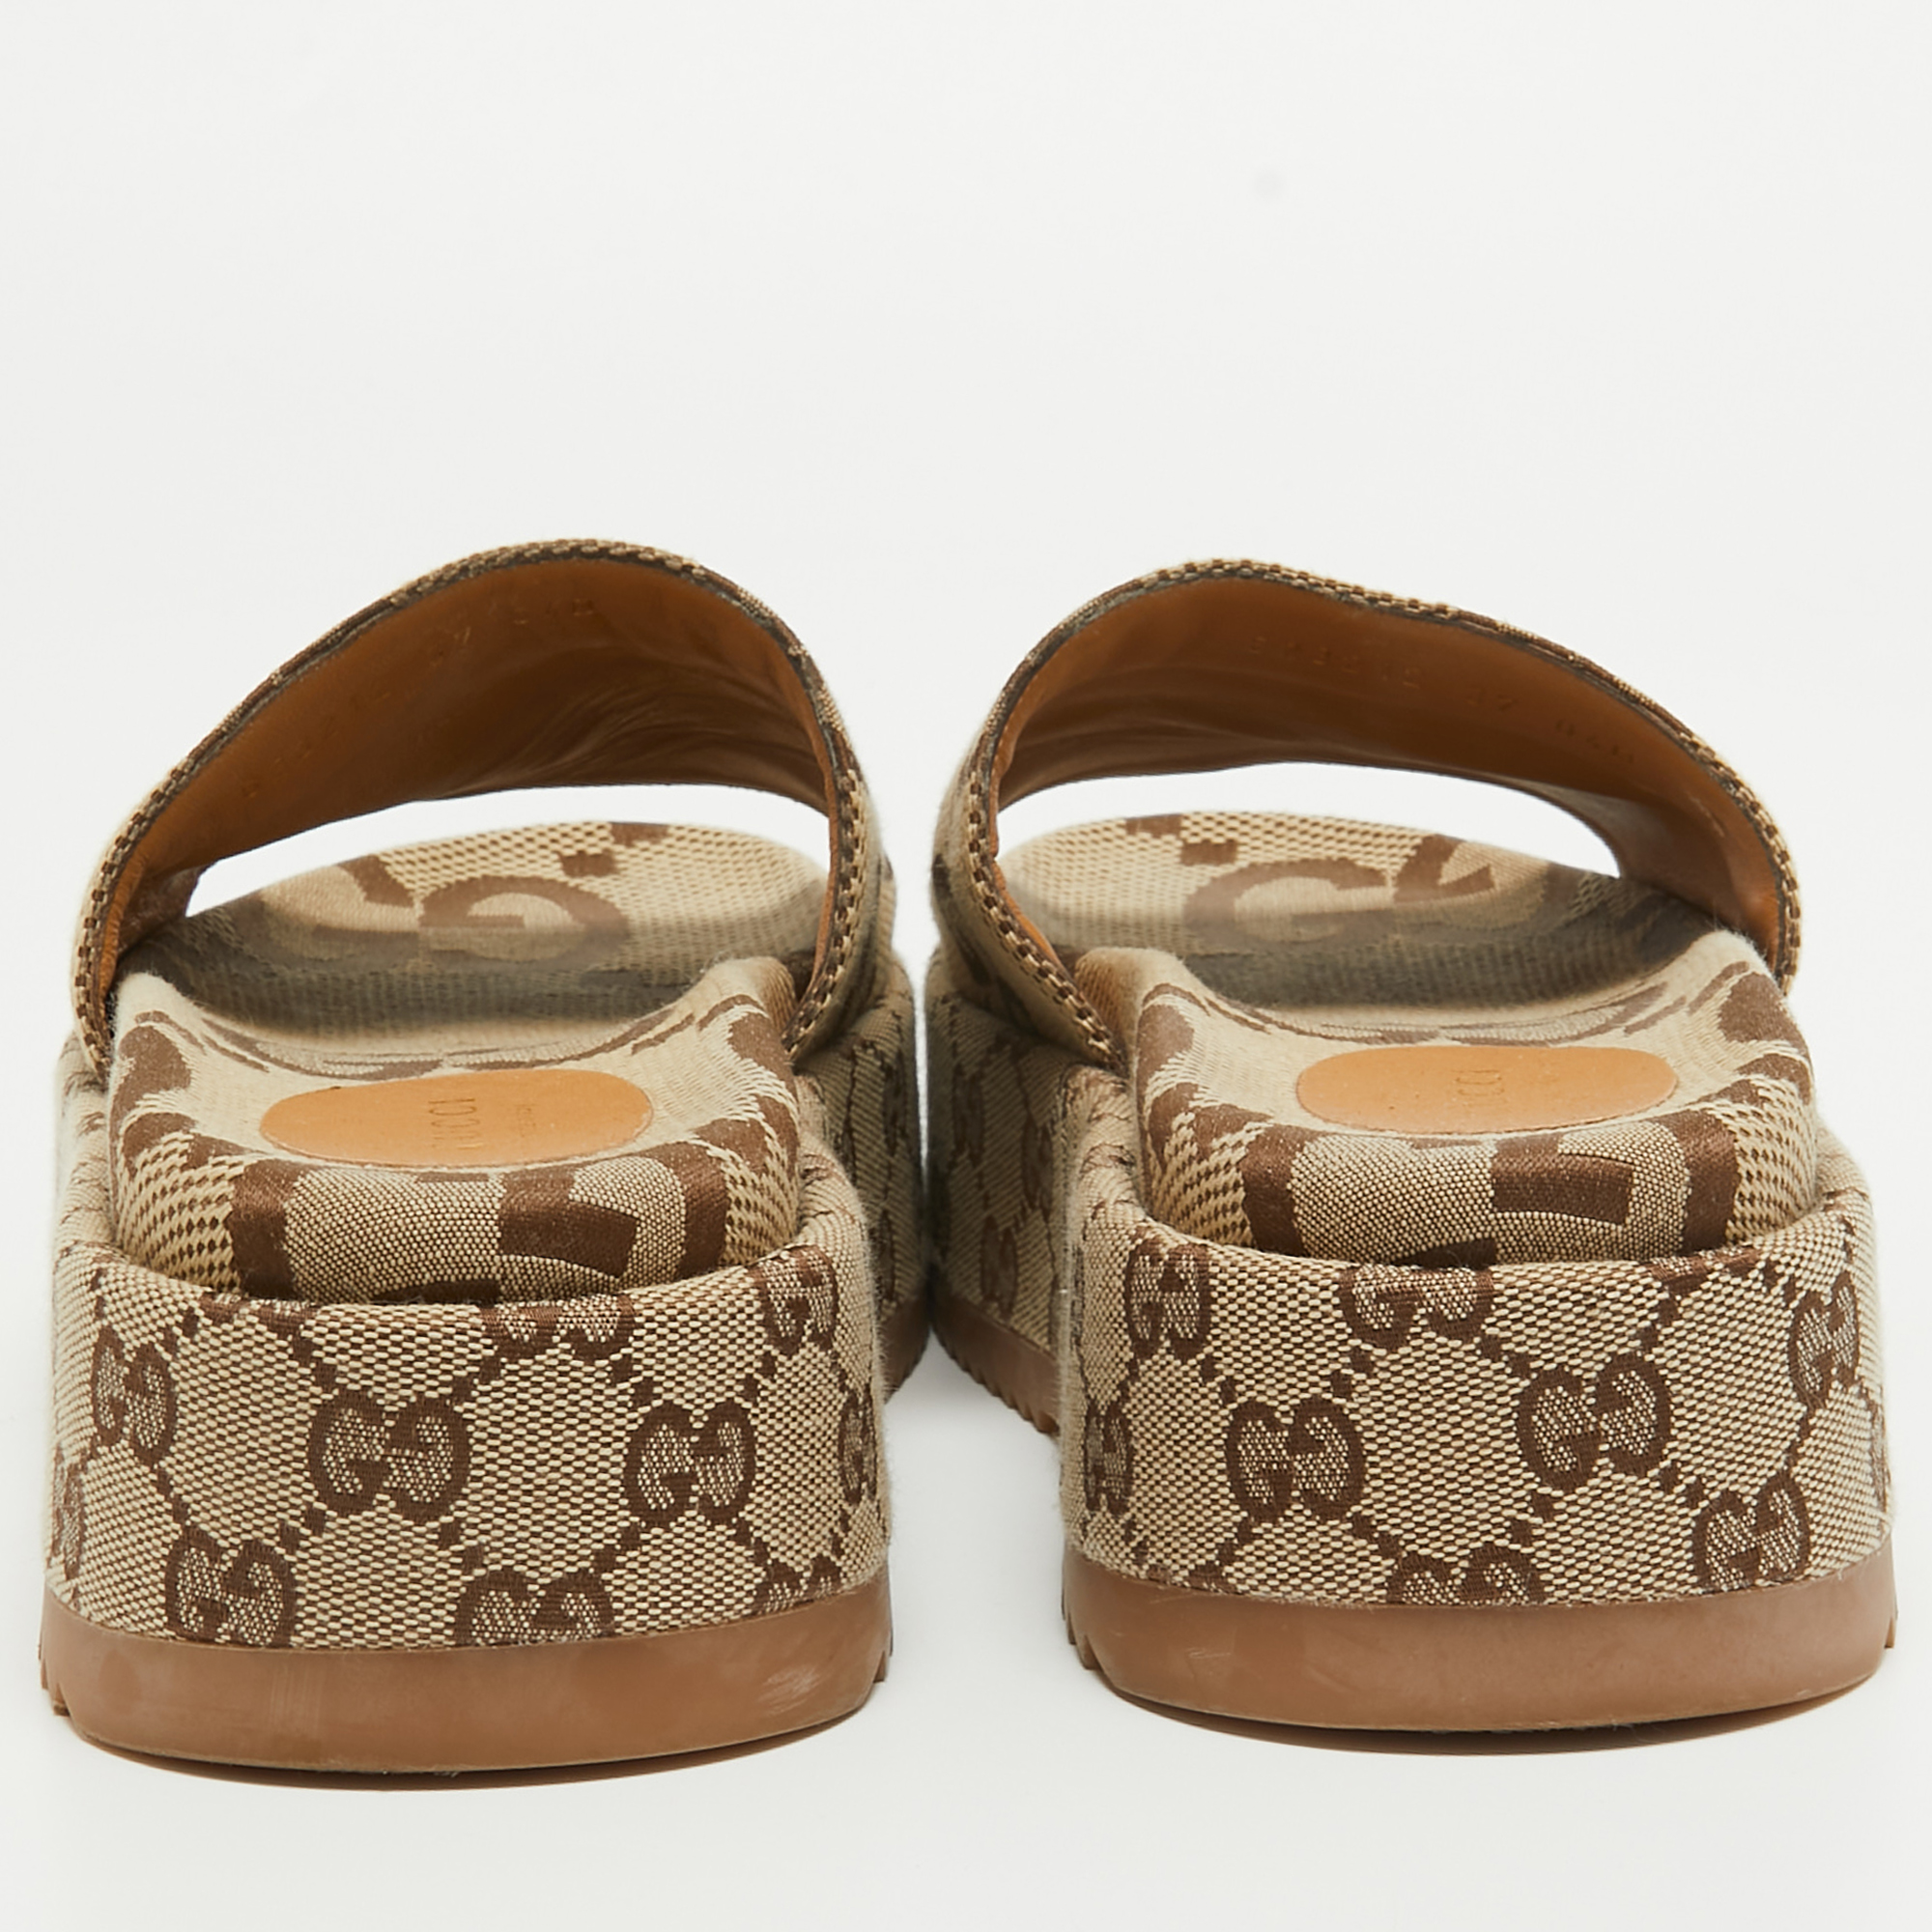 Gucci Brown/Beige GG Canvas Platform Slide Sandals Size 37